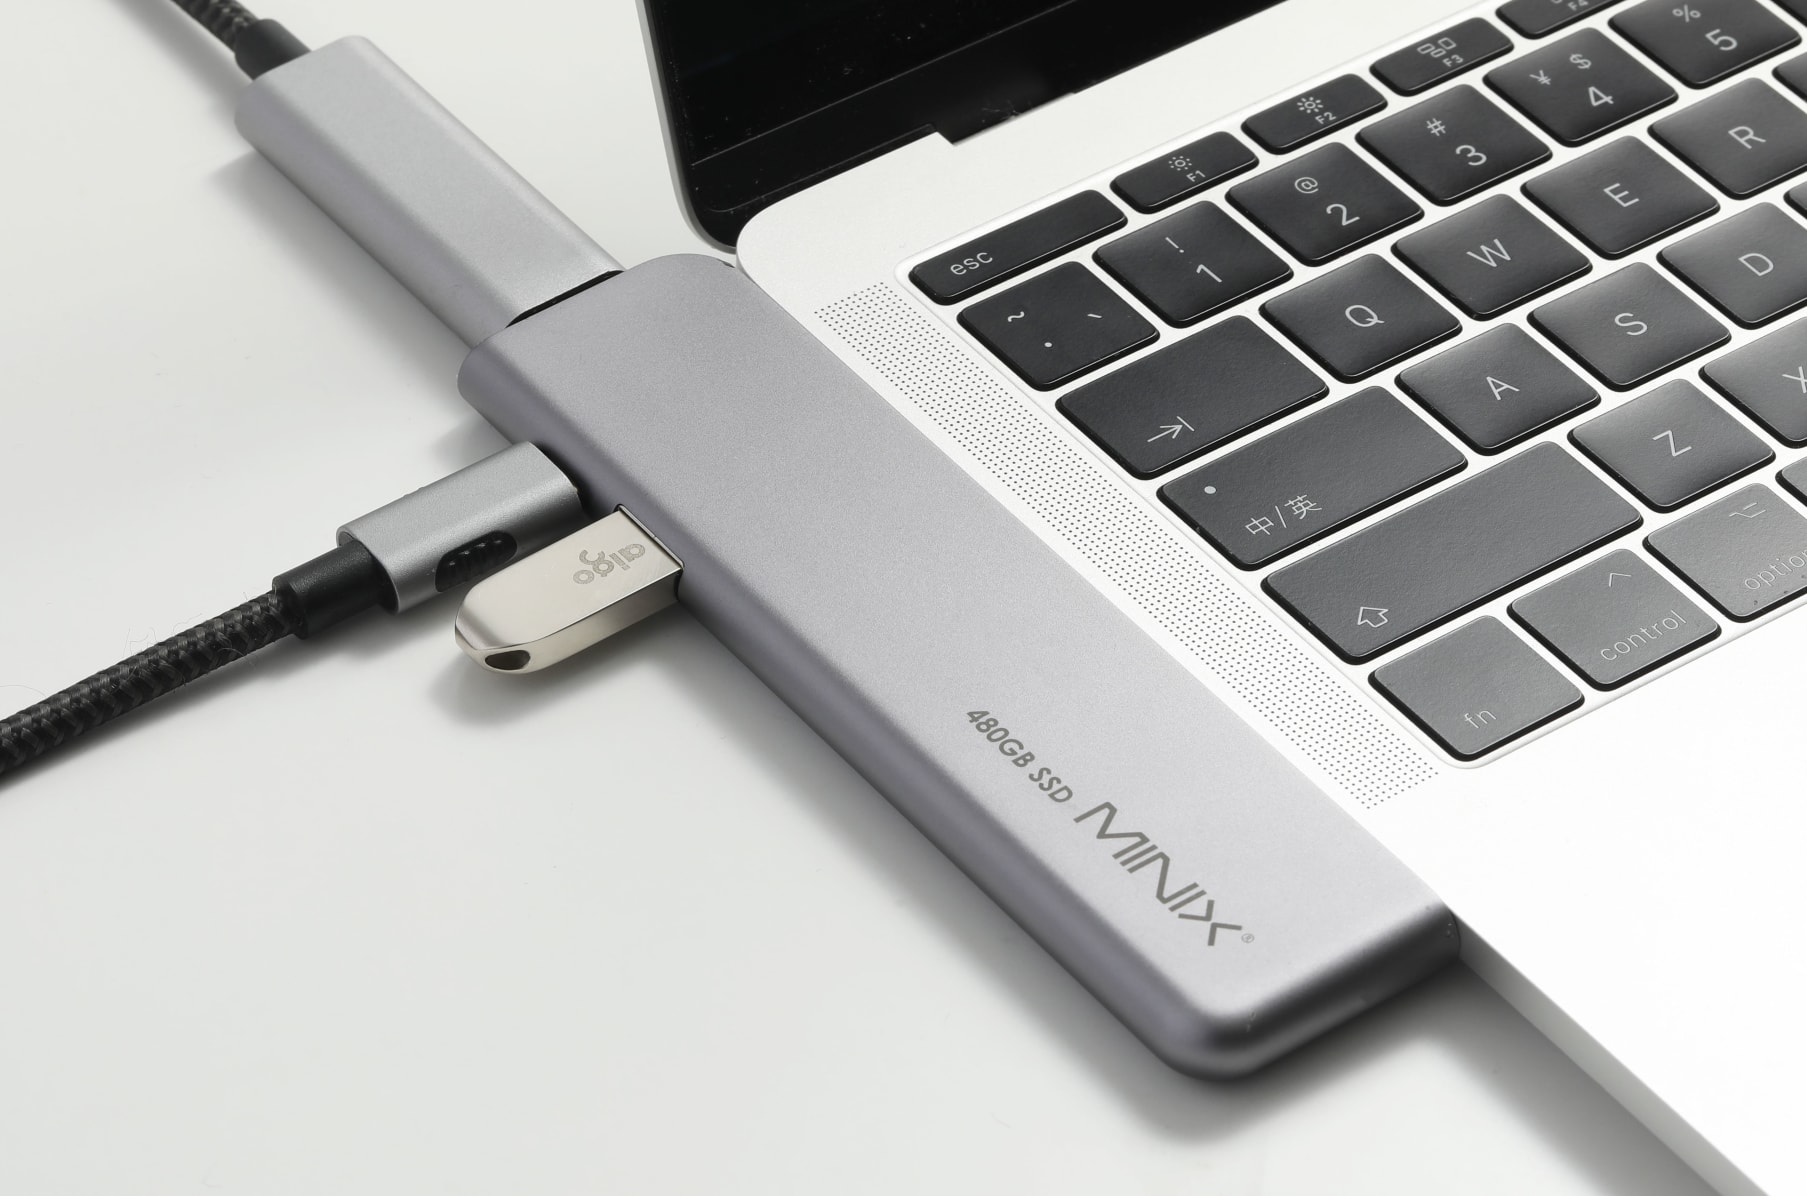 MINIX NEO Storage USB-C Multiport SSD Storage Hub 120 GB Silber All-in-One tragbare Speicherlösung designed für Apple MacBook/Air/Pro 